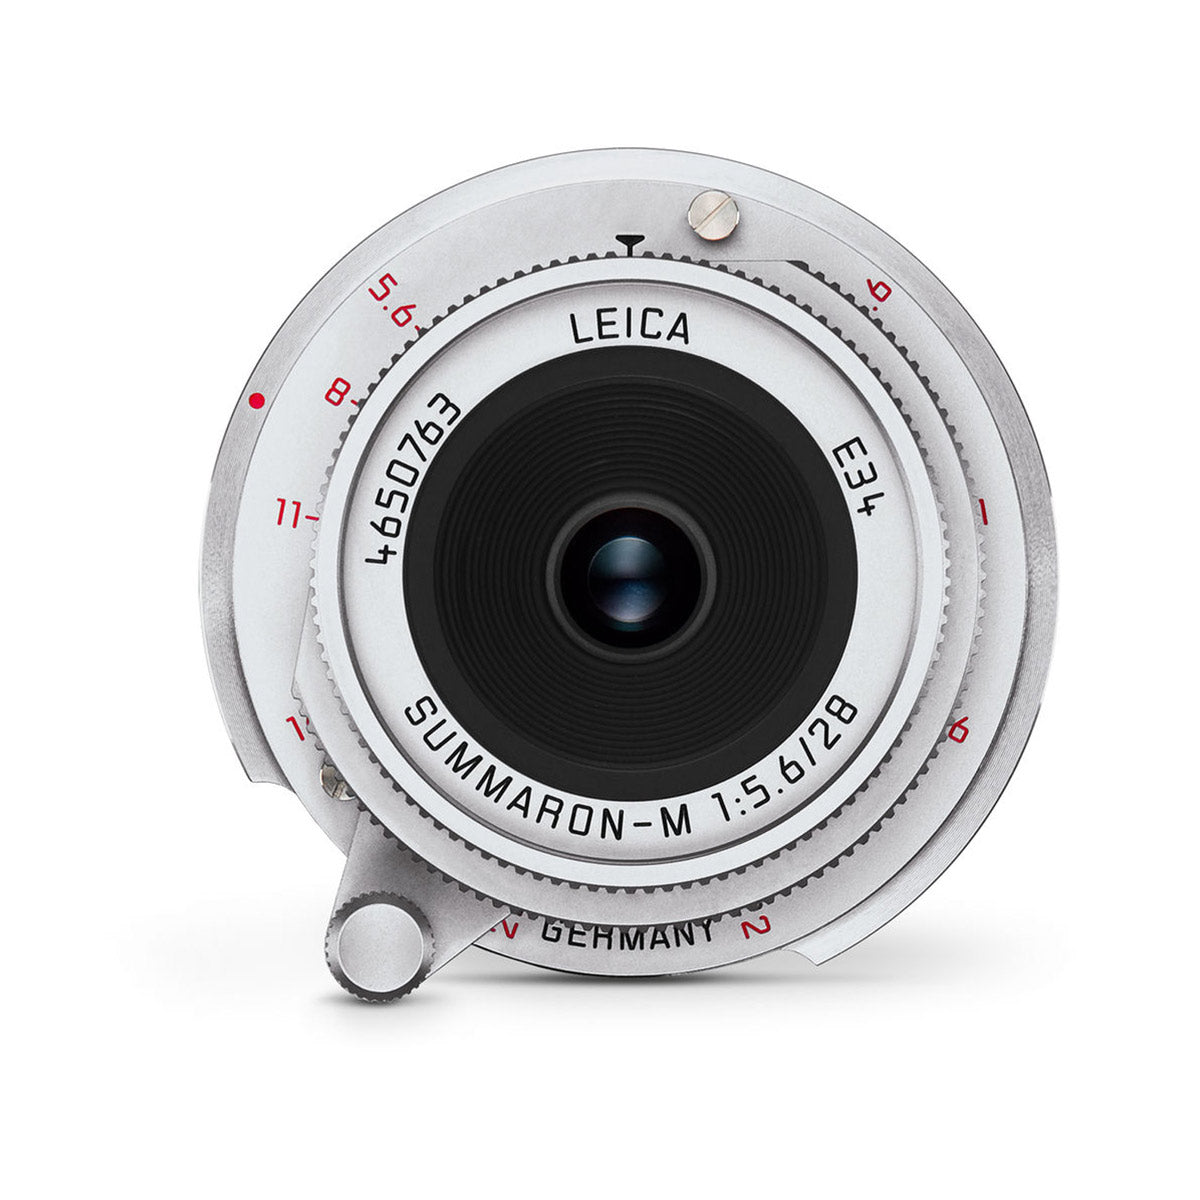 Leica 28mm f/5.6 Summaron-M ASPH Lens (Silver)